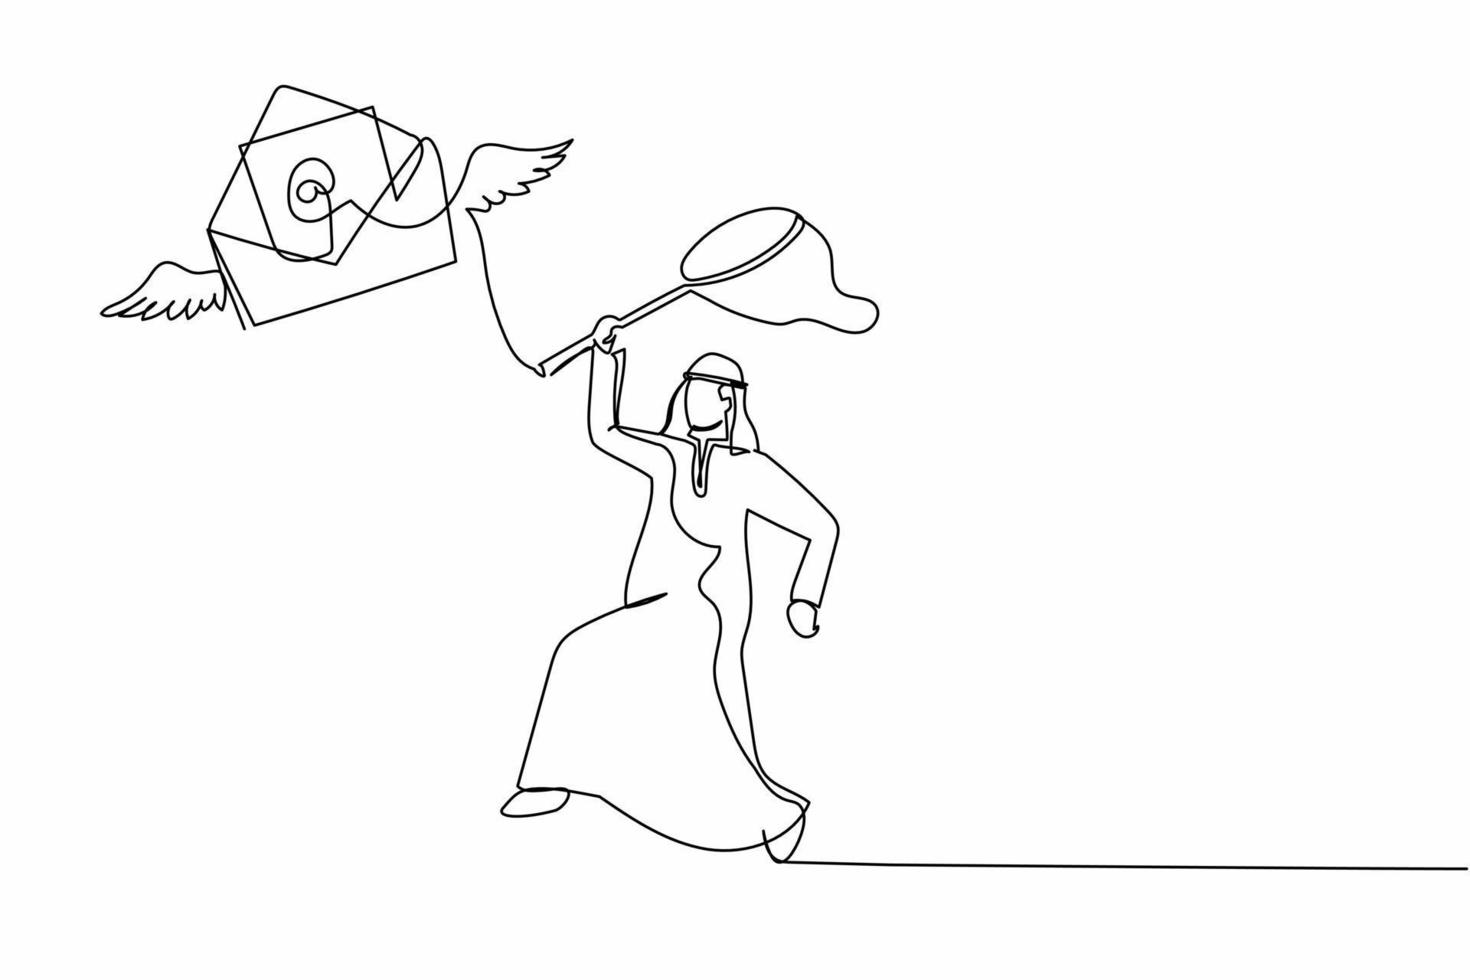 um empresário árabe de desenho de linha contínuo tenta pegar correio voador com rede de borboletas. falta de papel ou carta importante. metáfora de negócios. ilustração gráfica de vetor de desenho de linha única